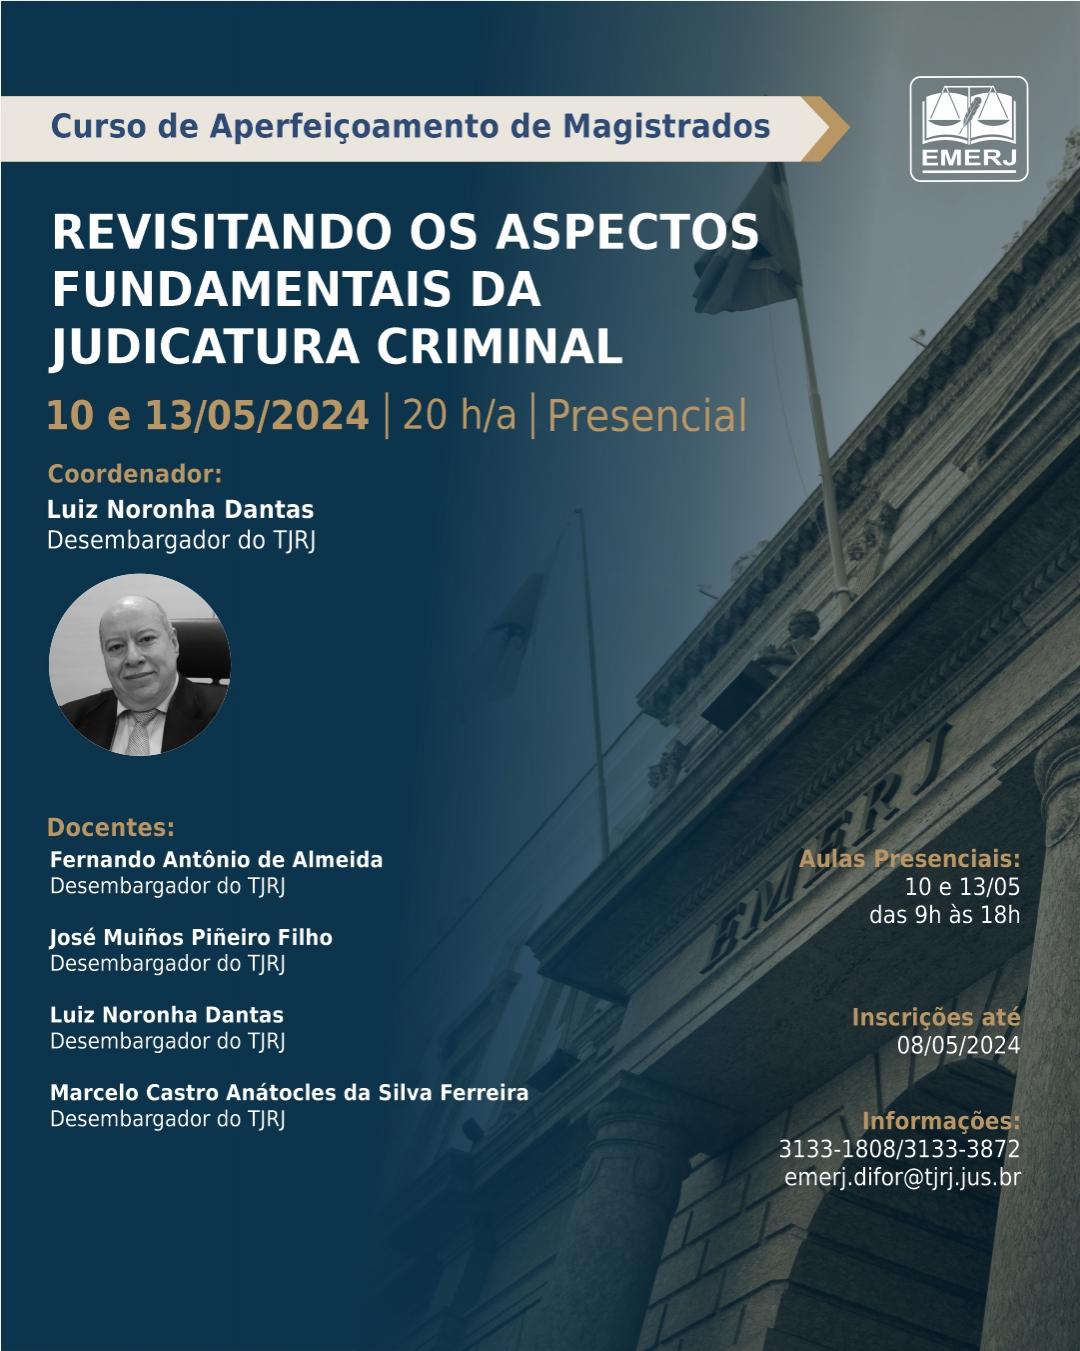 Imagem do banner principal do curso - Revisitando os Aspectos Fundamentais da Judicatura Criminal